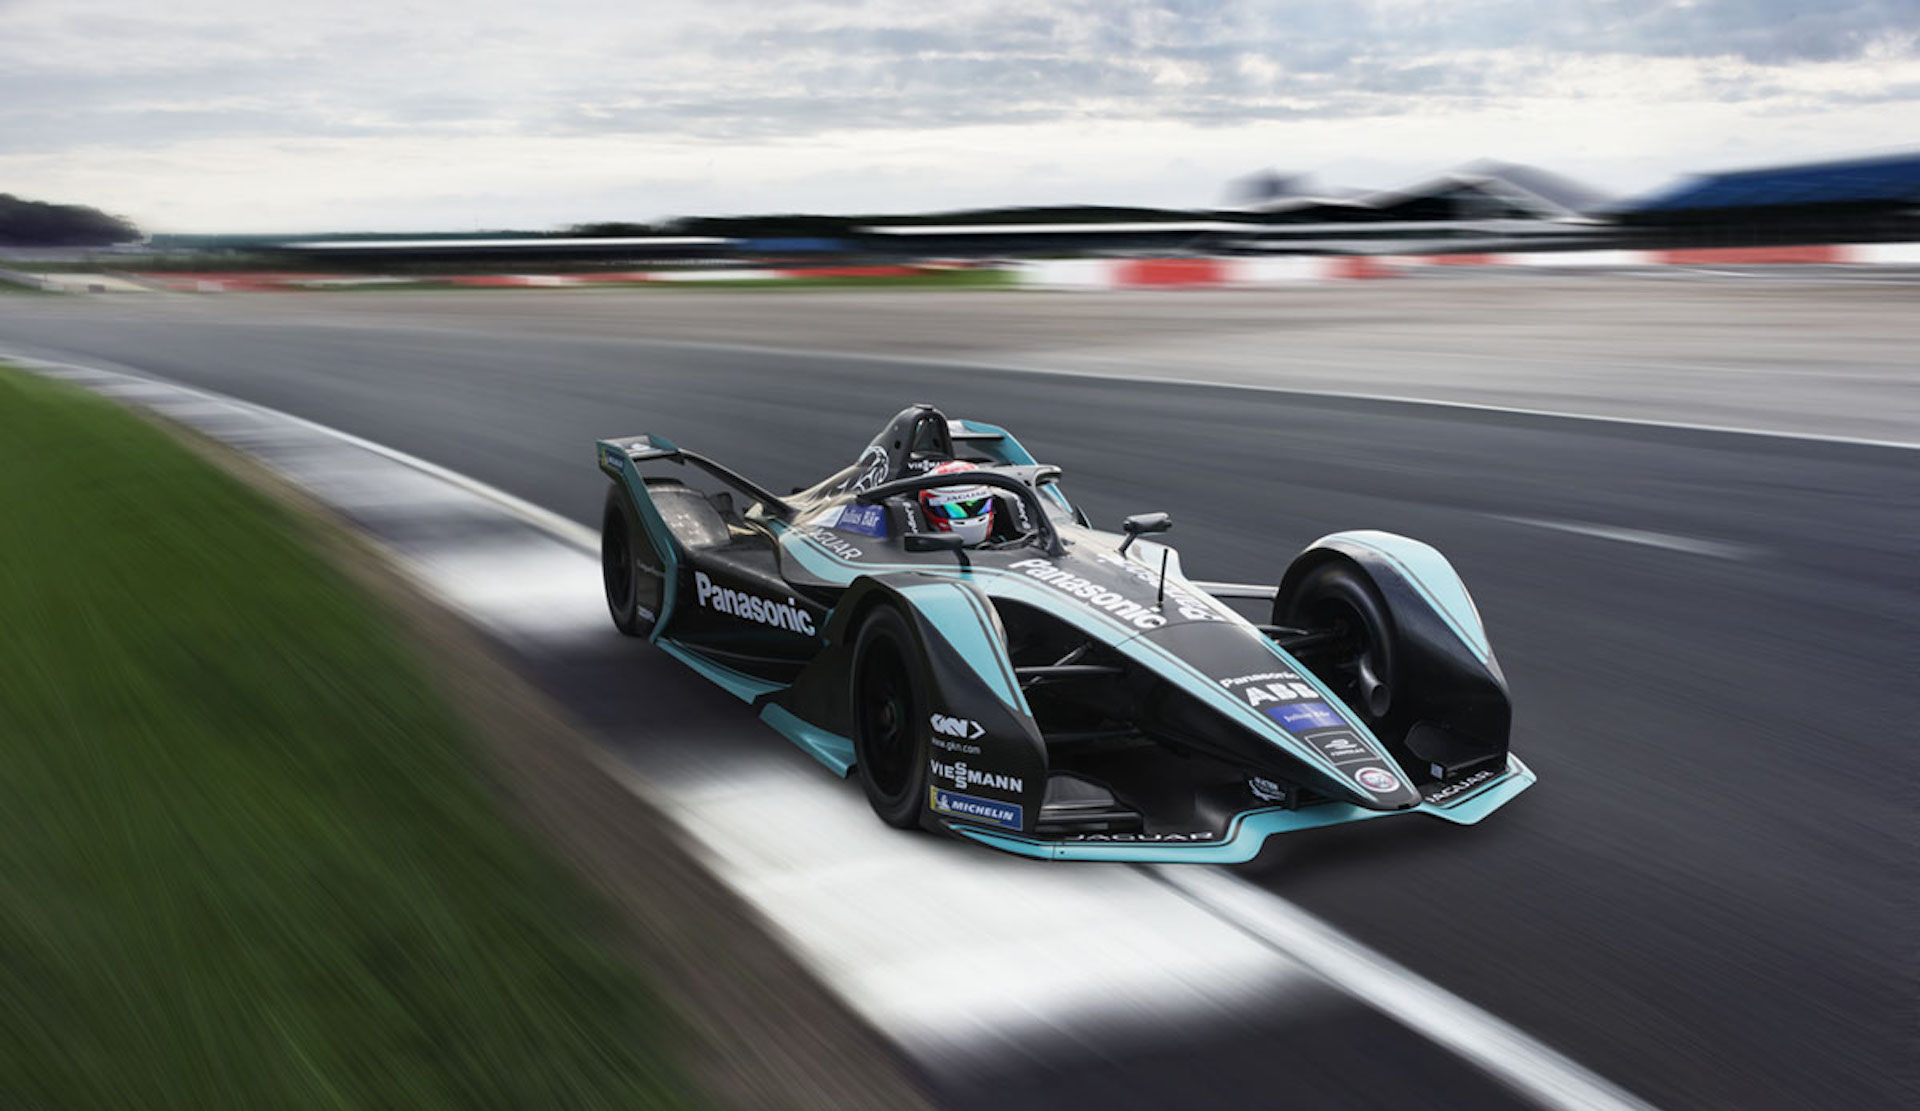 Команда чемпионата Formula E Panasonic Jaguar Racing представила новую машину для сезона 2018-19 годов